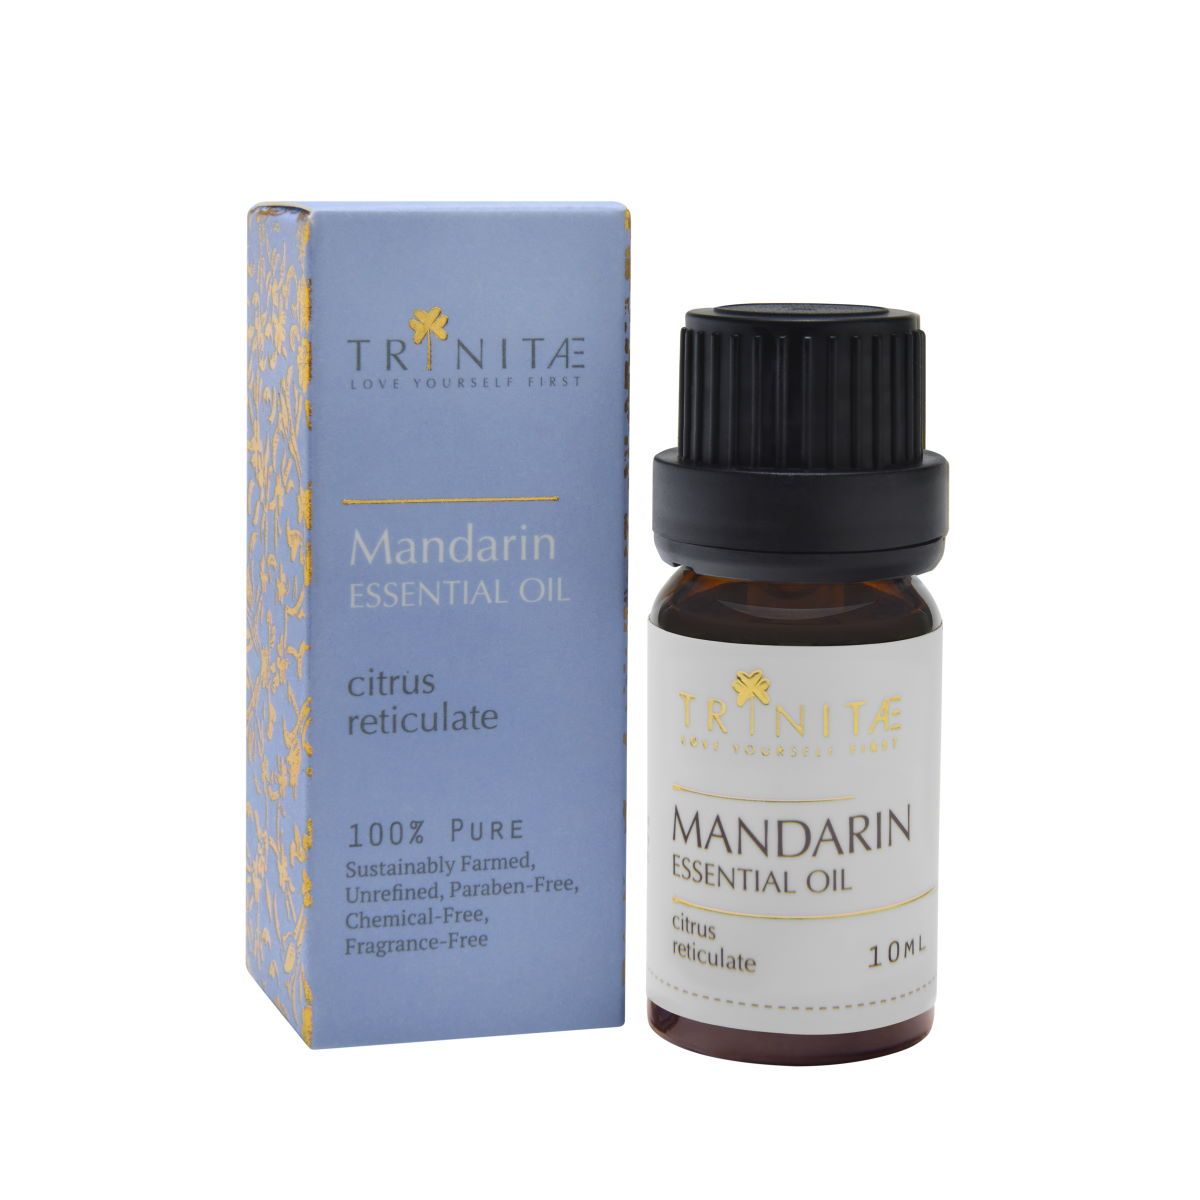 Mandarin Essential Oil Citrus reticulate